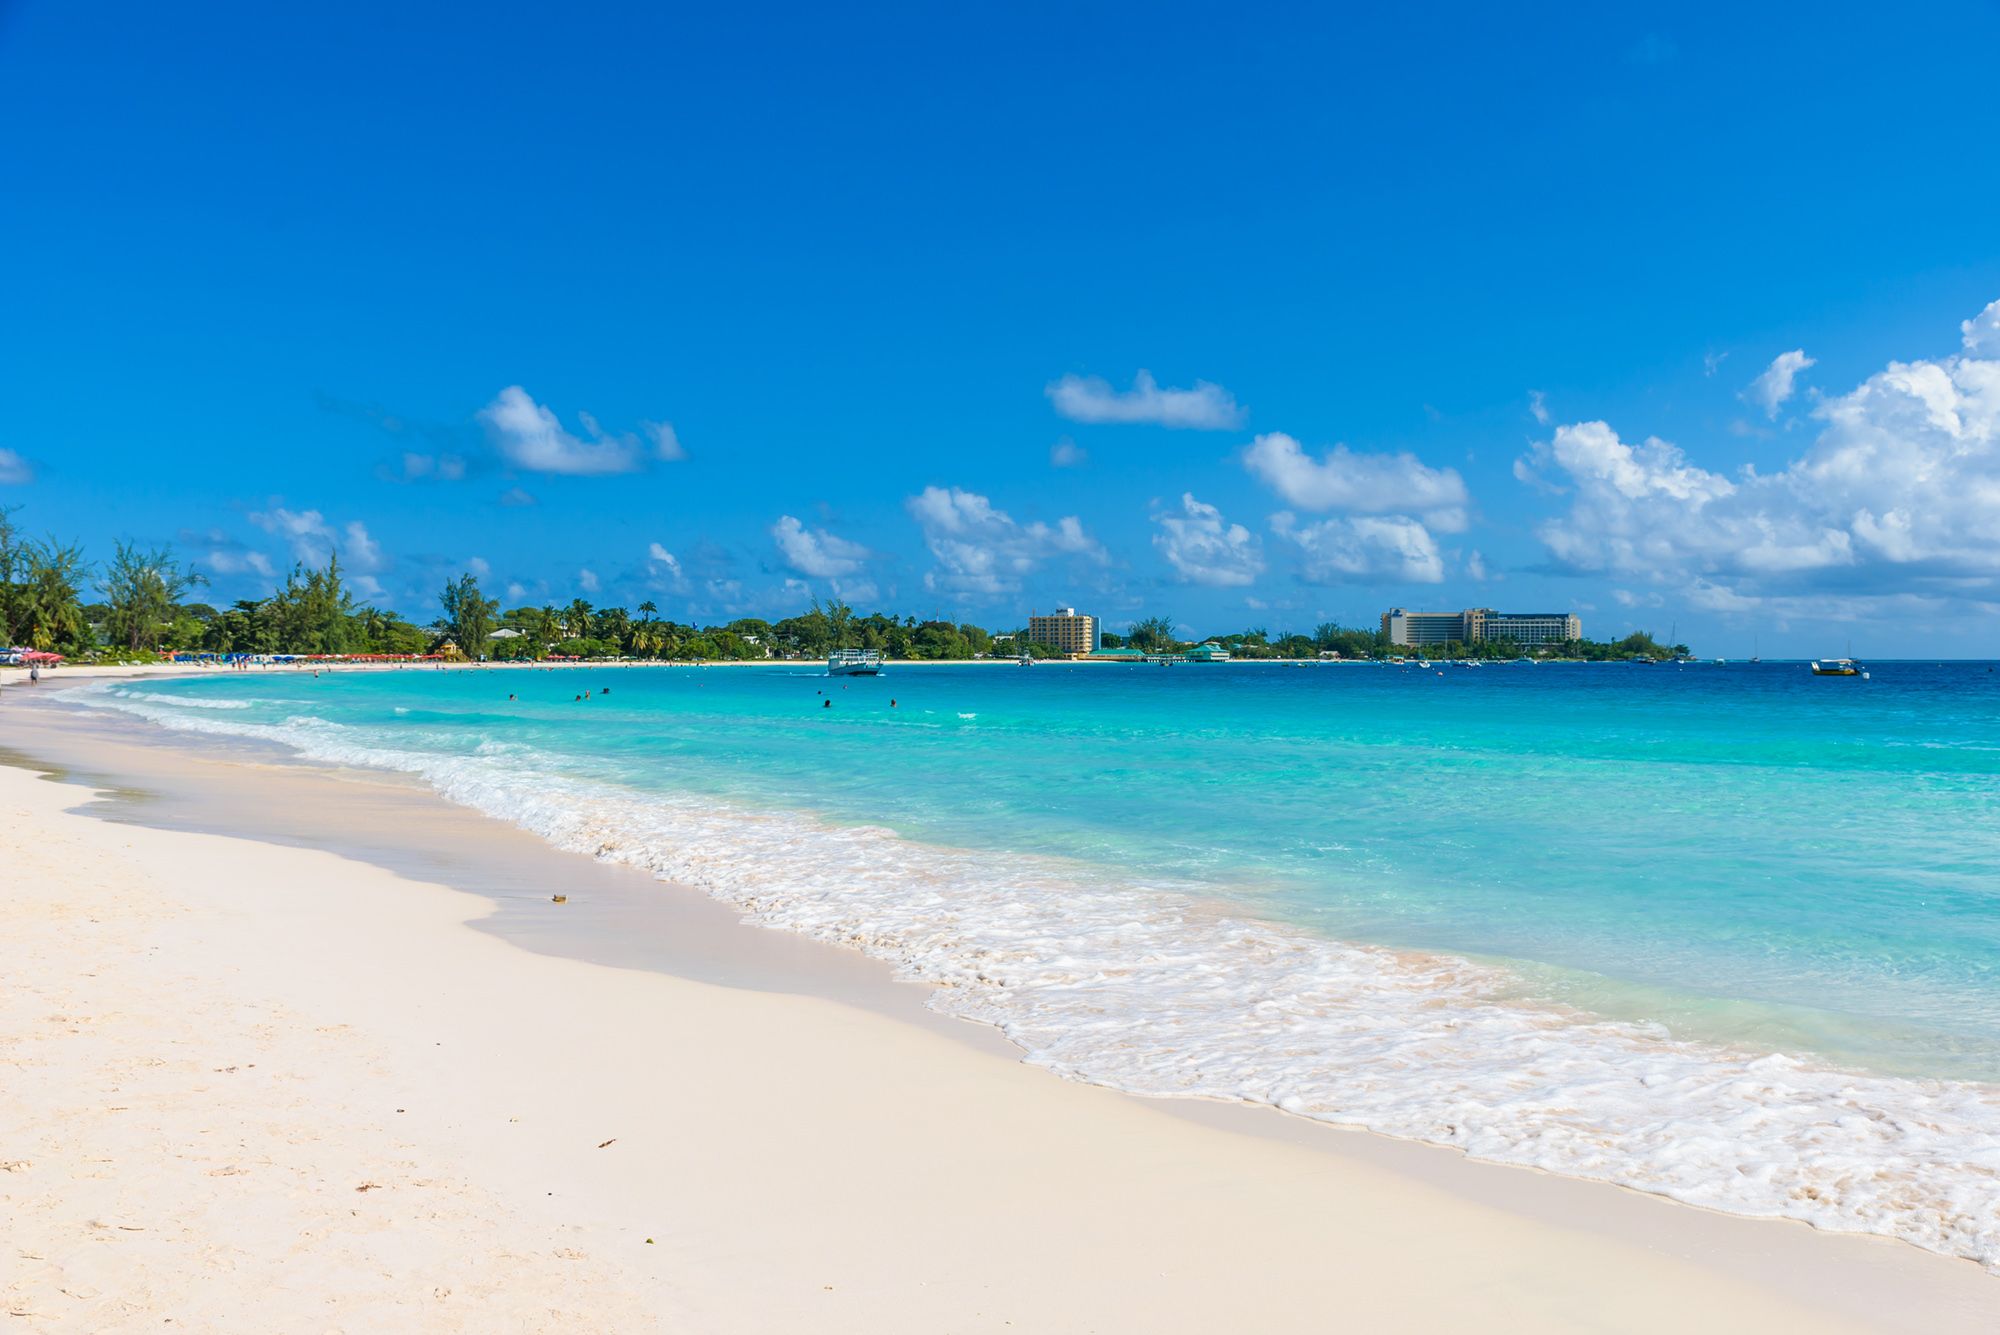 Комфортный пляжный отдых без визы на Барбадосе